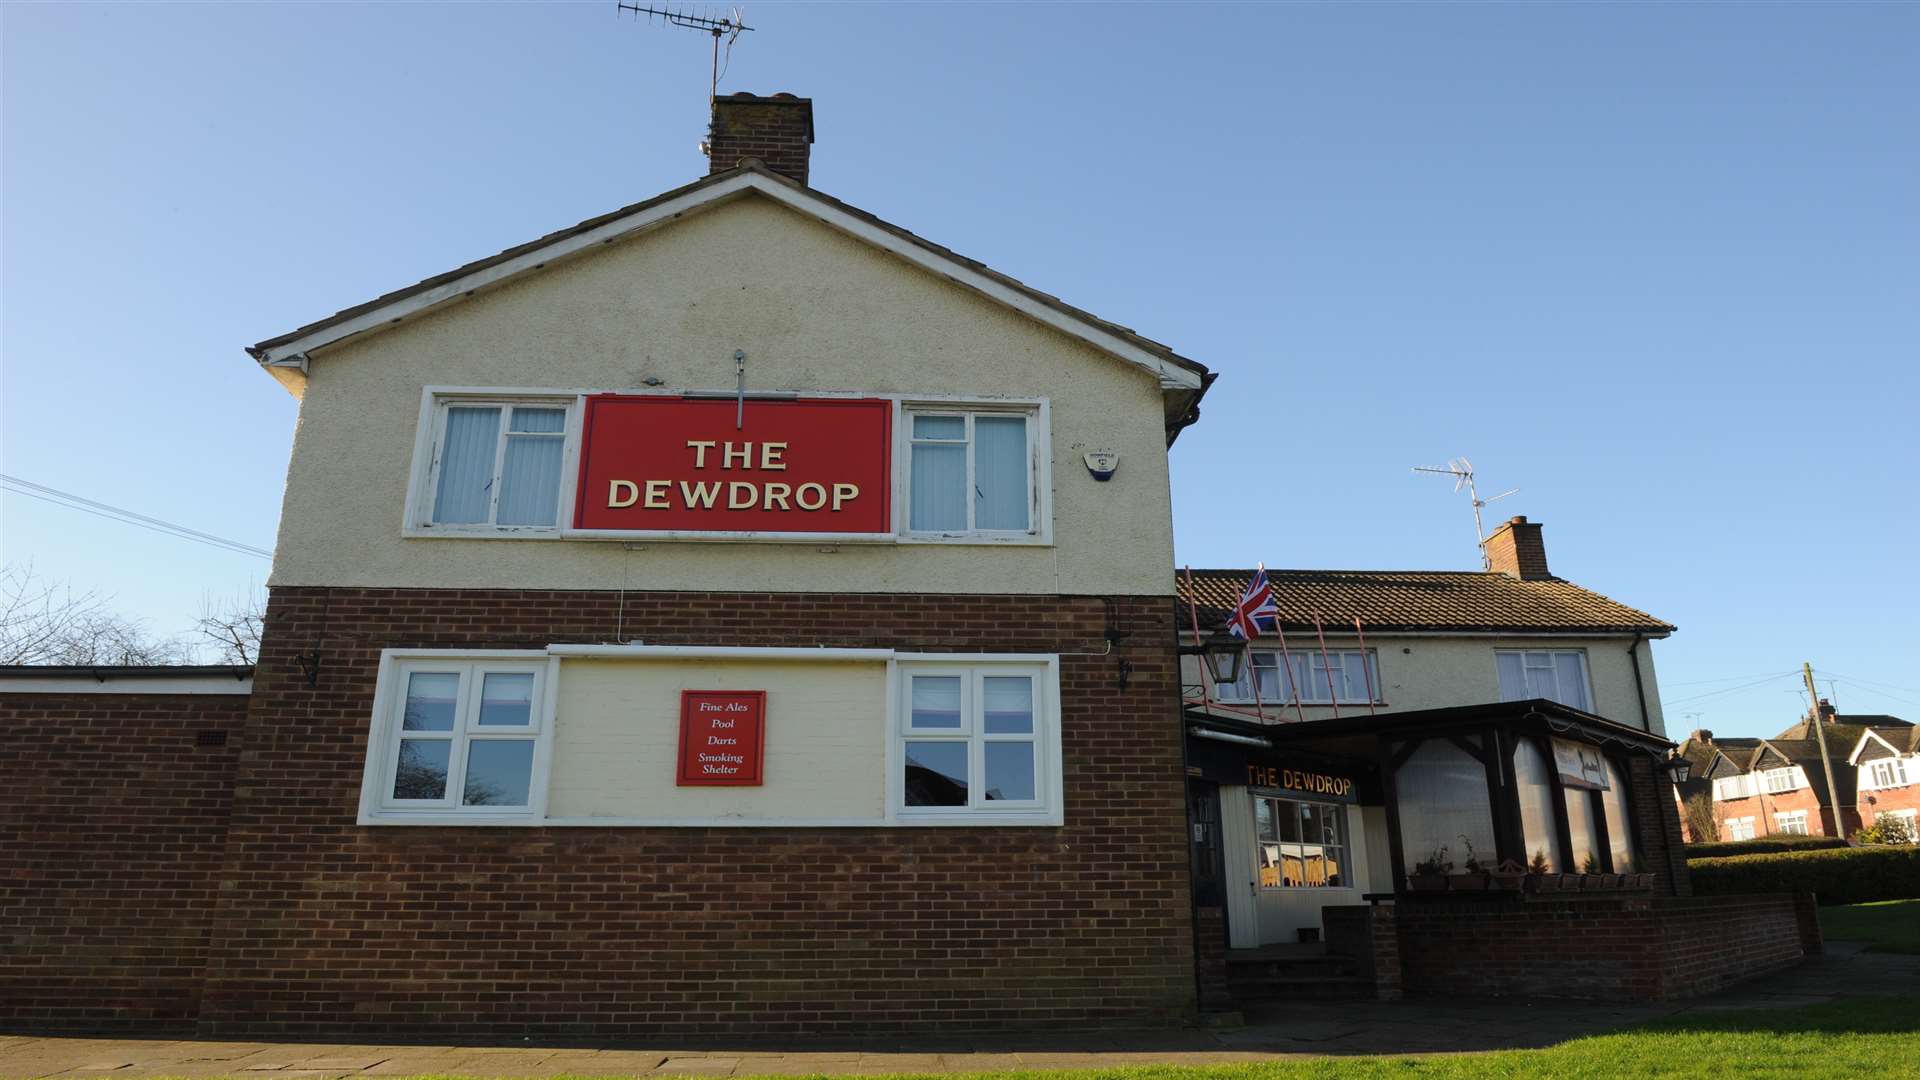 The Dewdrop pub